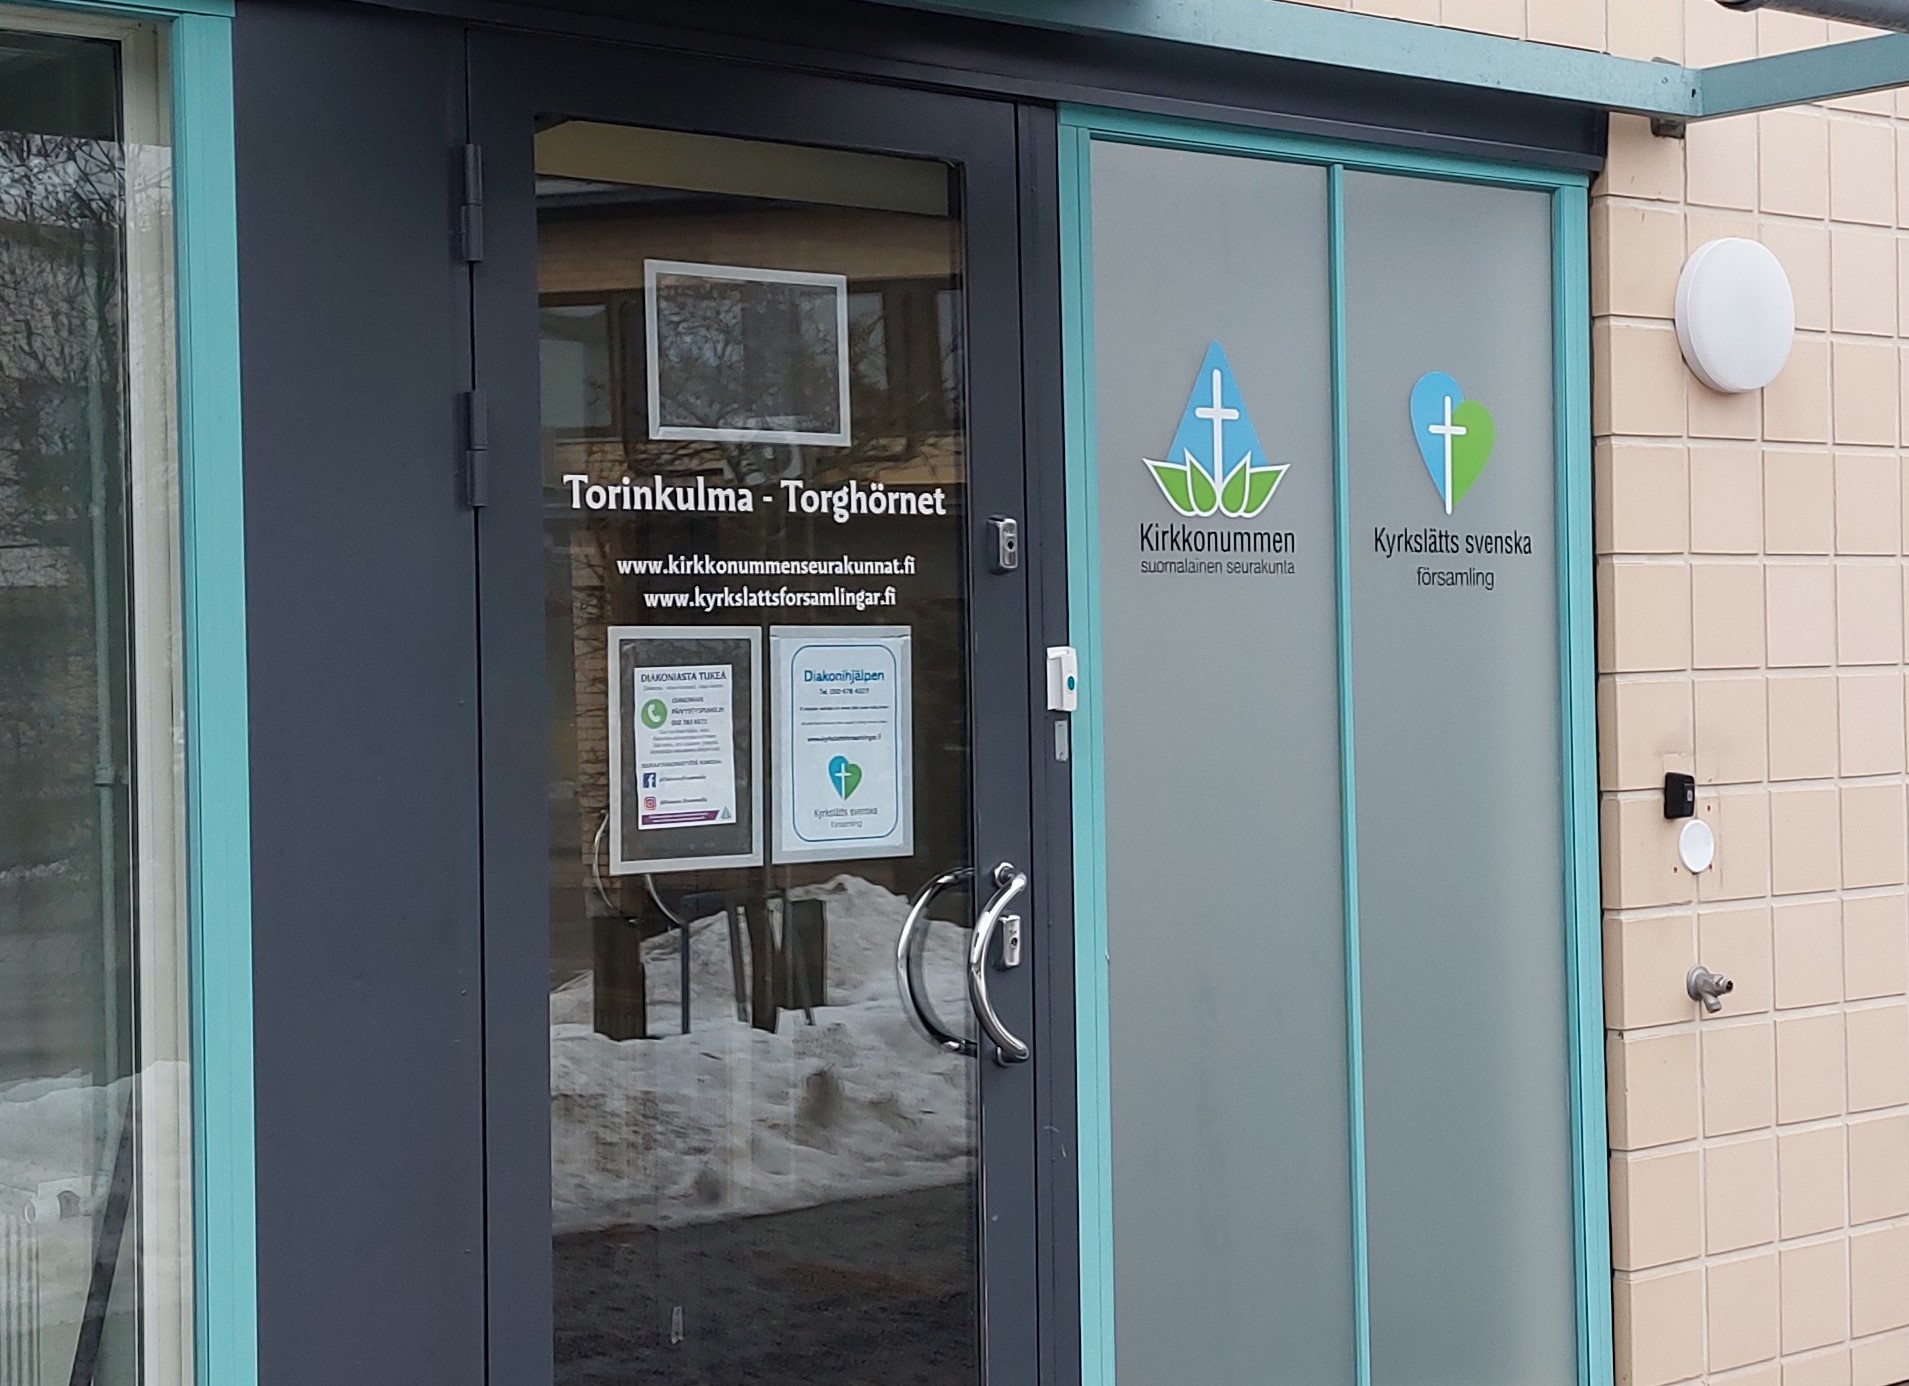 Lasinen sisäänkäyntiovi, jossa lukee tilan nimi, Torinkulma - Torghörnet. Oven viereisessä ikkunassa on Kirkkonummen seurakuntien sini-valko-vihreät logot.